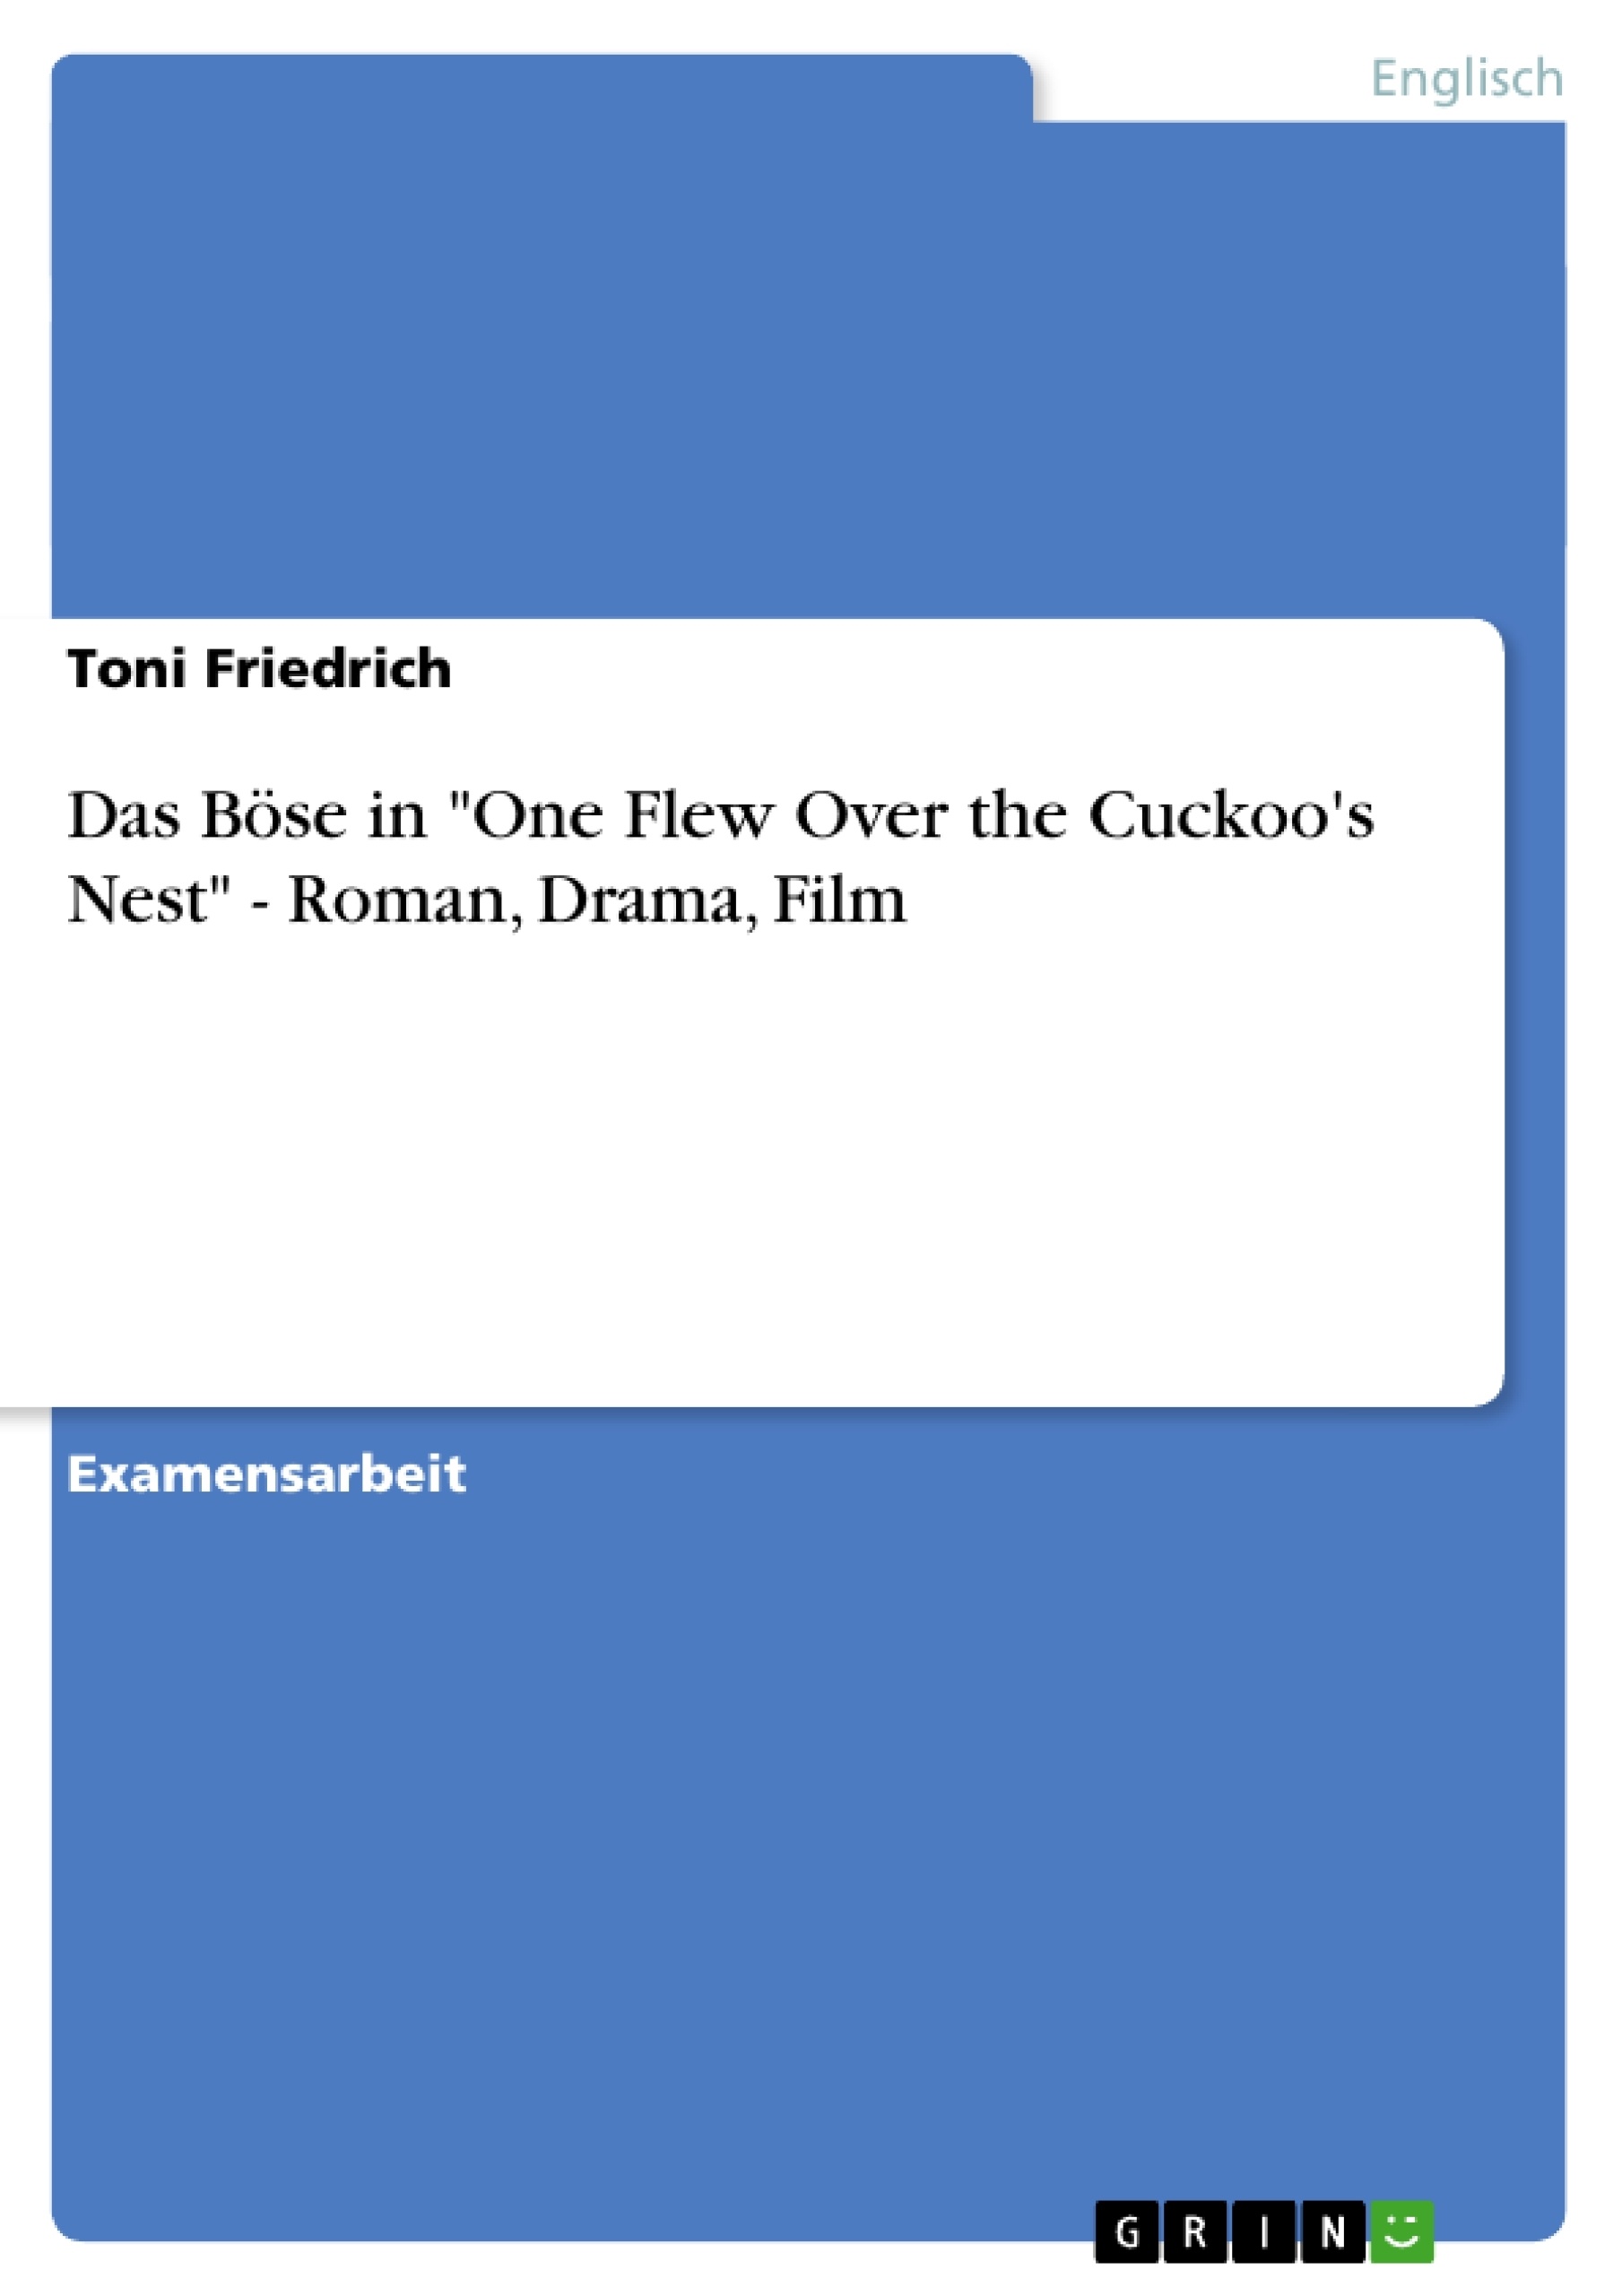 Titre: Das Böse in "One Flew Over the Cuckoo's Nest" - Roman, Drama, Film